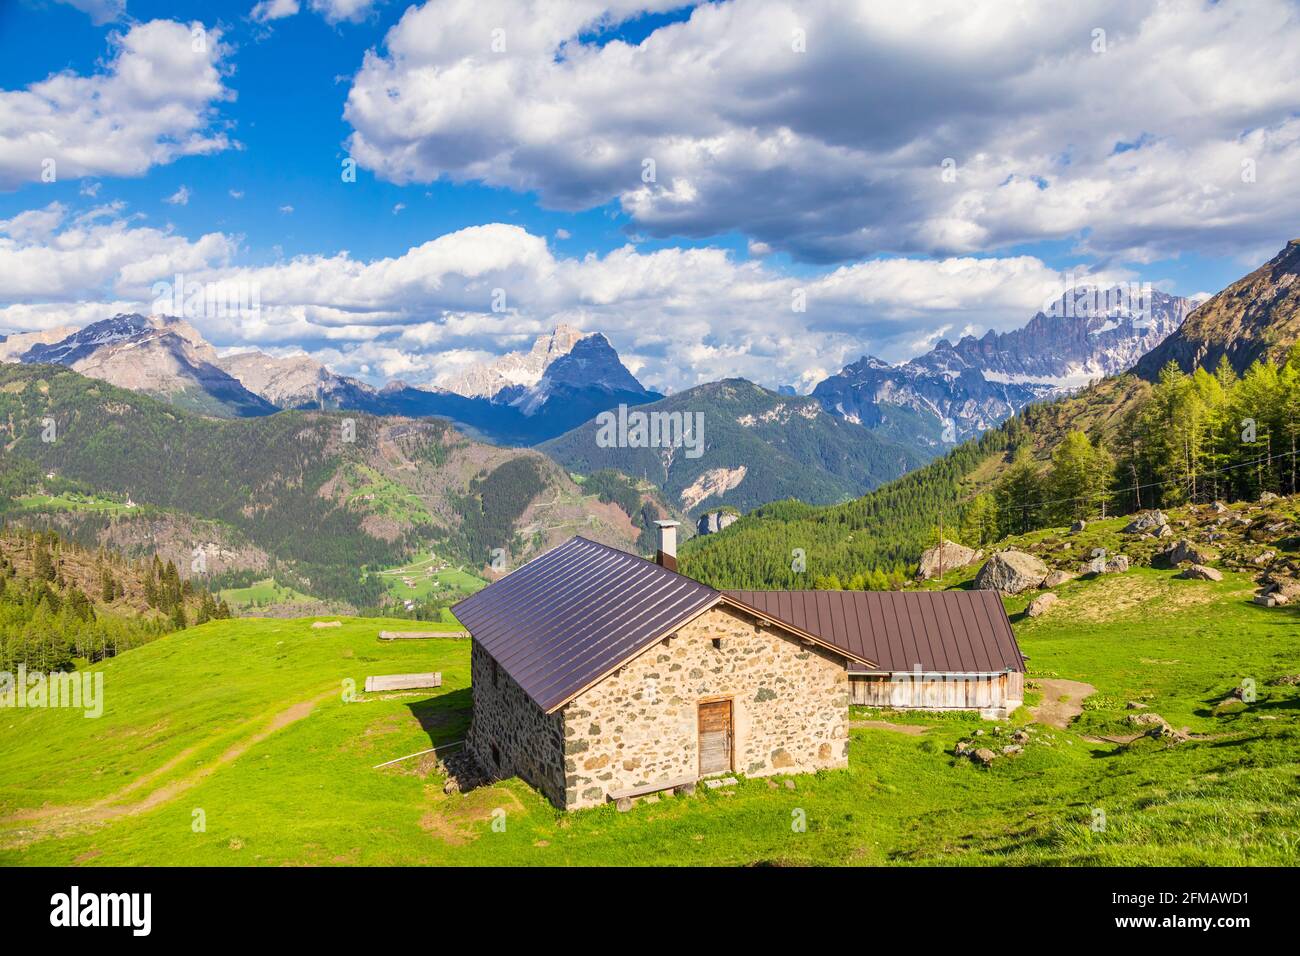 mountain huts in summer, high altitude rural scenery in the dolomites, pastures of Laste, rocca Pietore, Belluno, Veneto, Italy Stock Photo